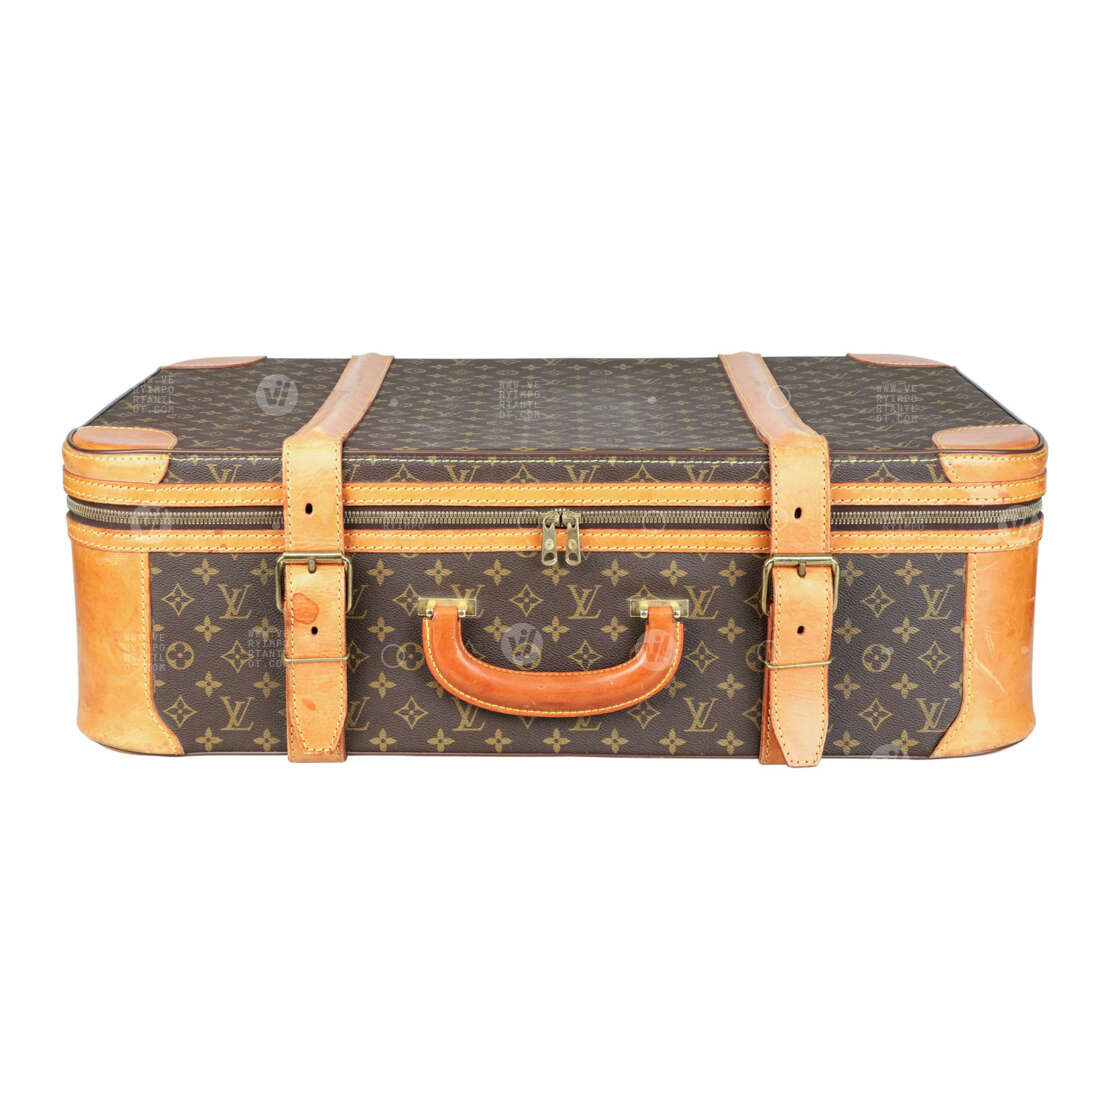 LOUIS VUITTON VINTAGE travel suitcase 